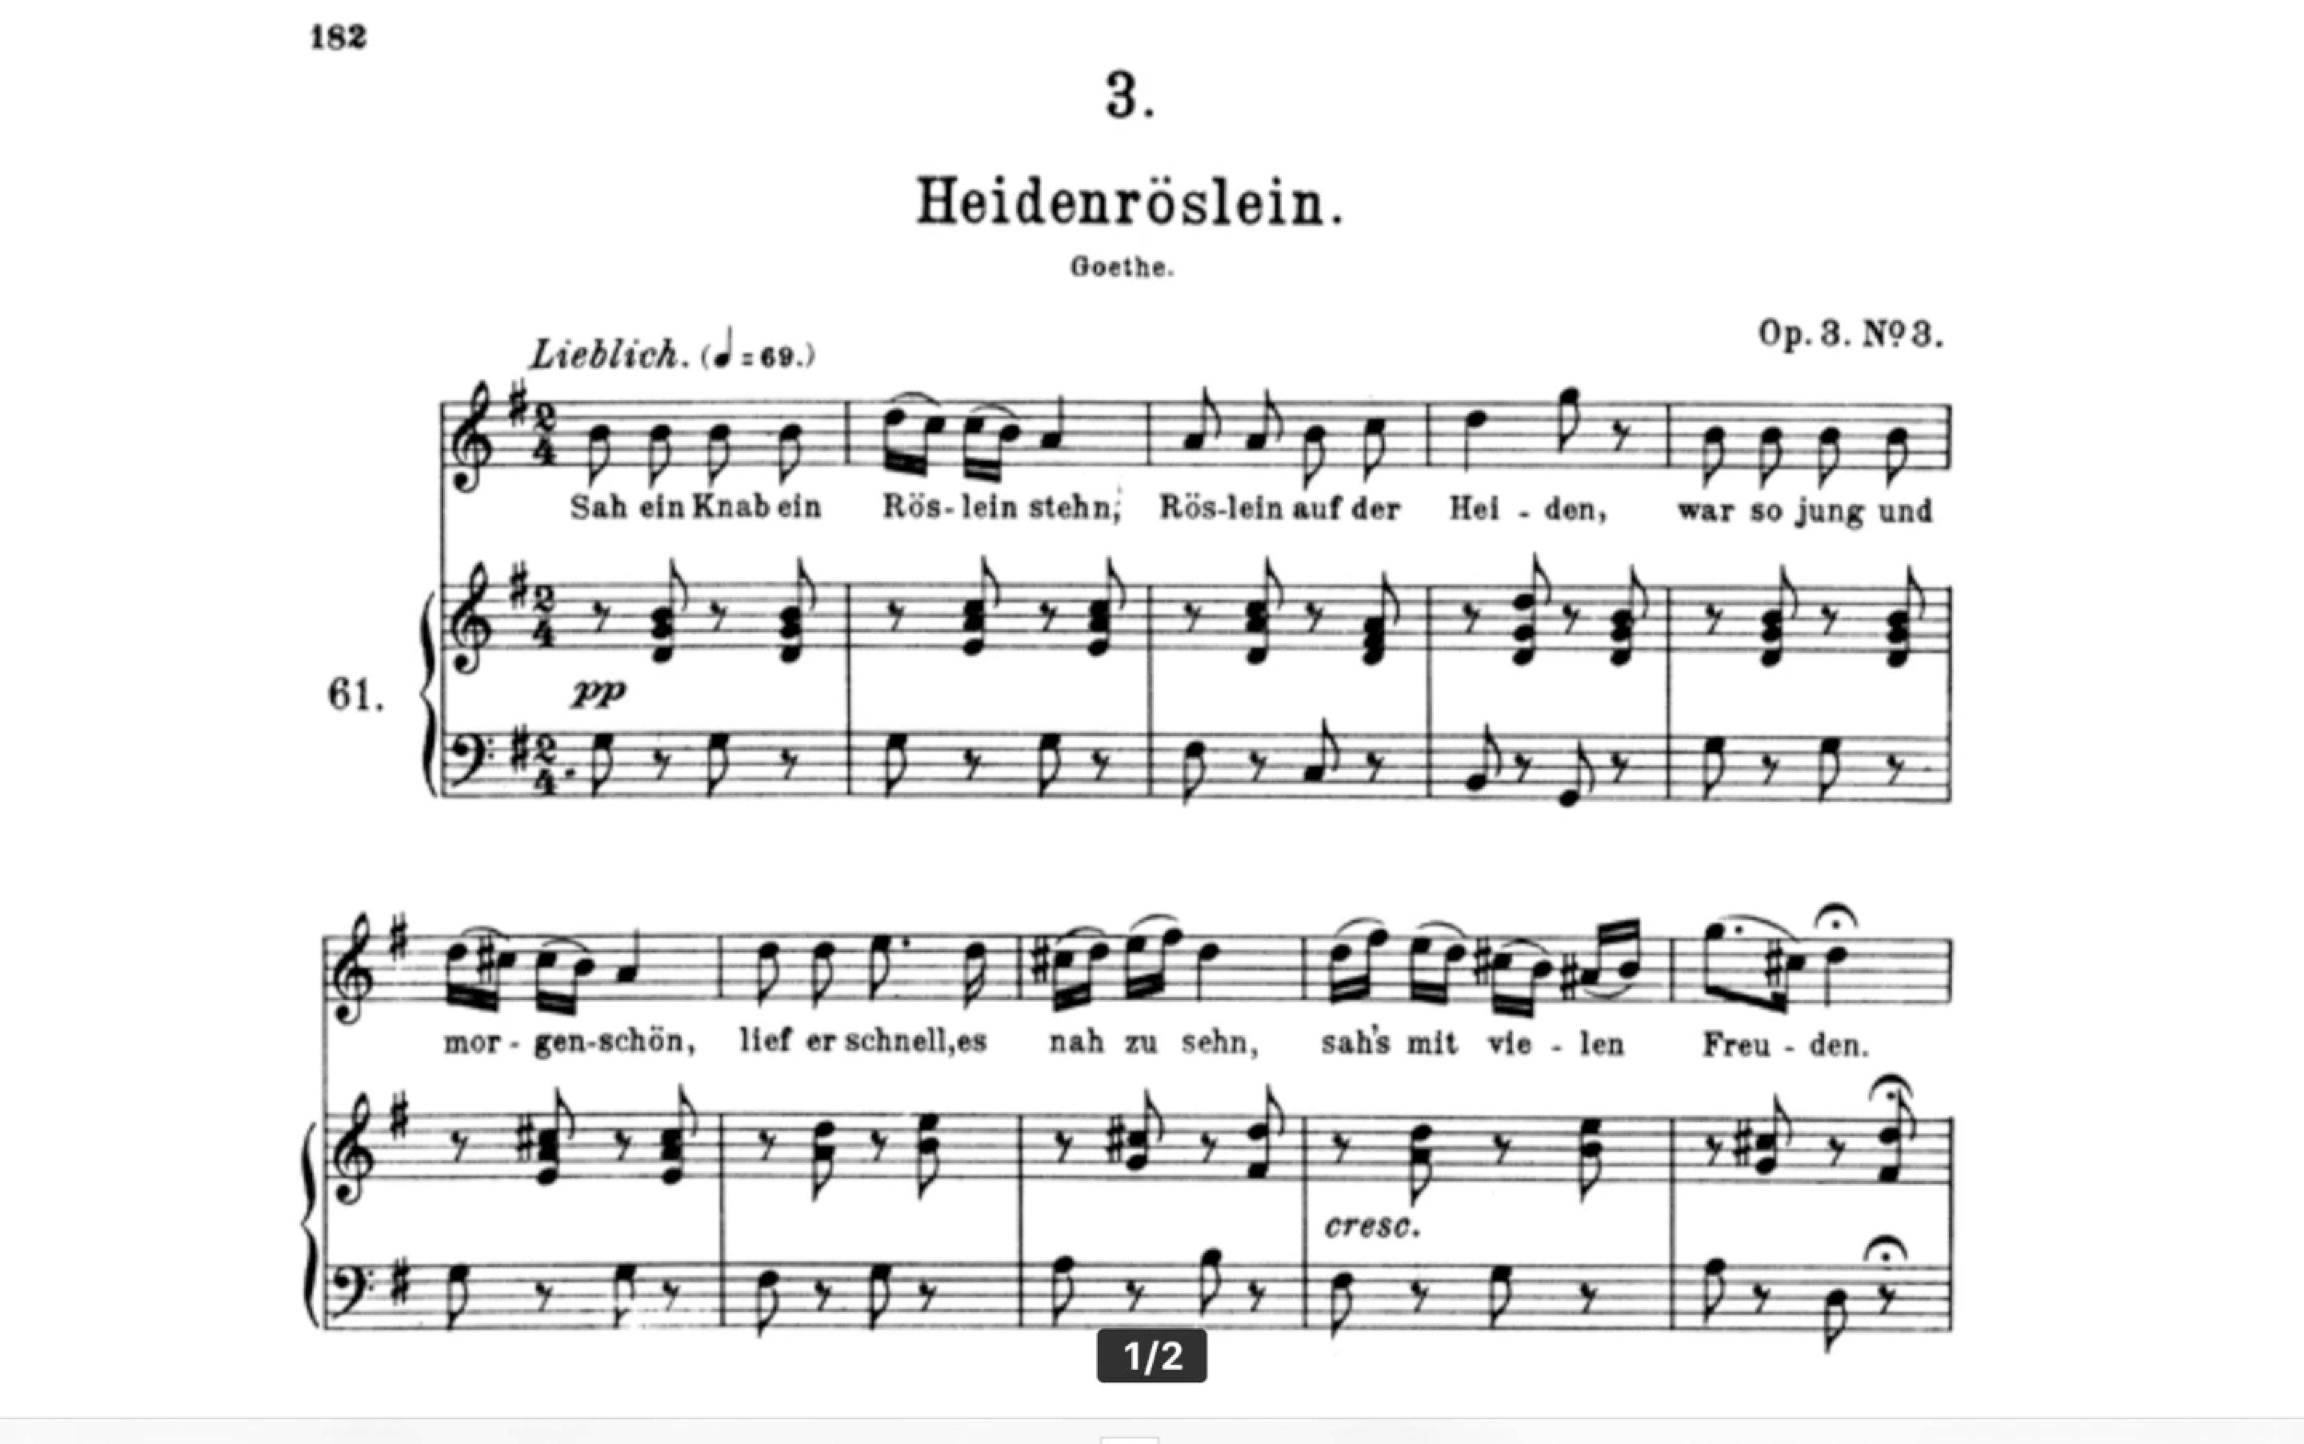 标准德语范读与示唱 舒伯特 野玫瑰 schubert heidenr02slein